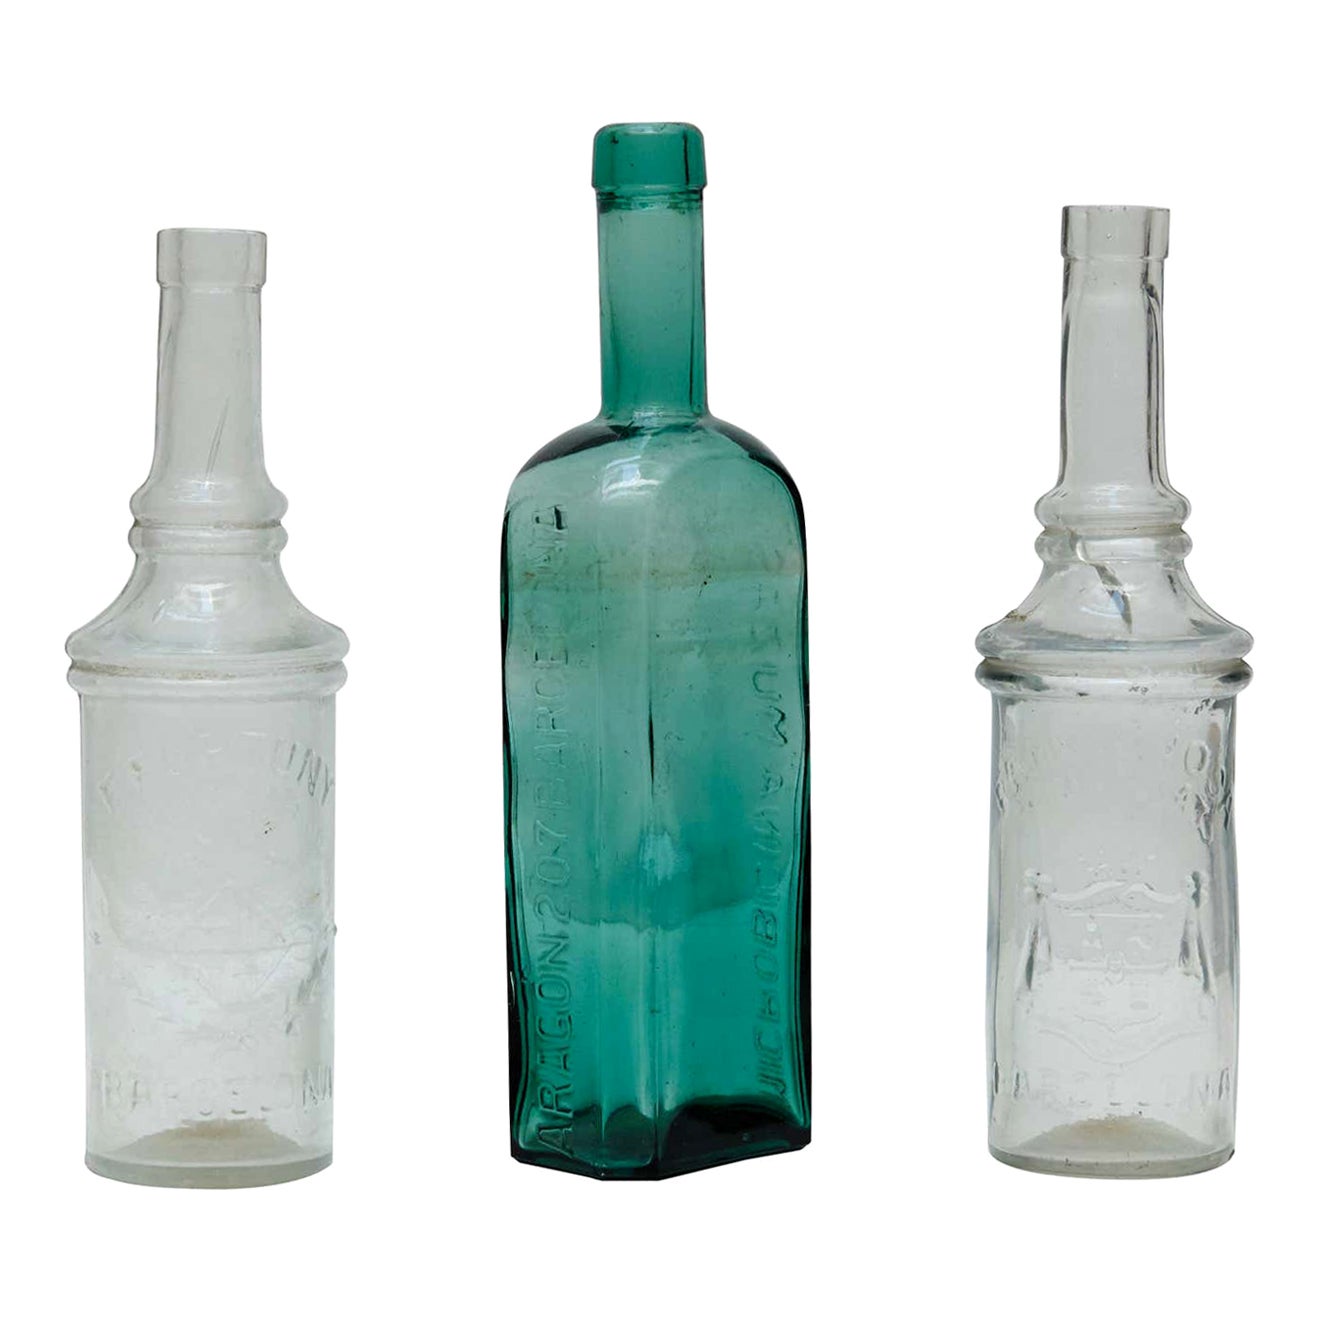 Pharmacy Glass Bottles Set from Barcelona, circa 1920